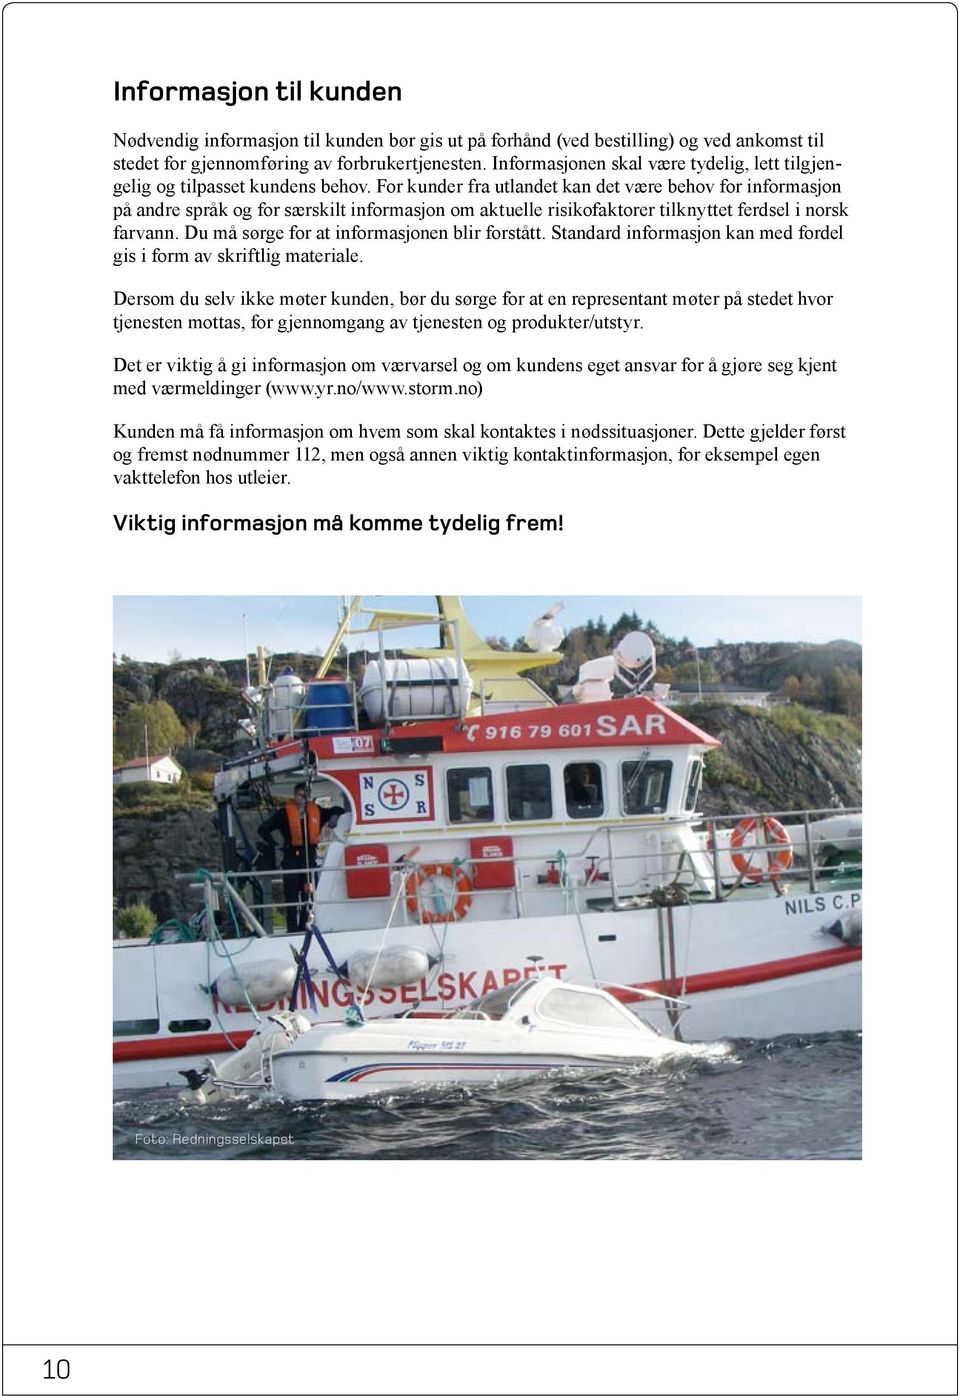 For kunder fra utlandet kan det være behov for informasjon på andre språk og for særskilt informasjon om aktuelle risikofaktorer tilknyttet ferdsel i norsk farvann.